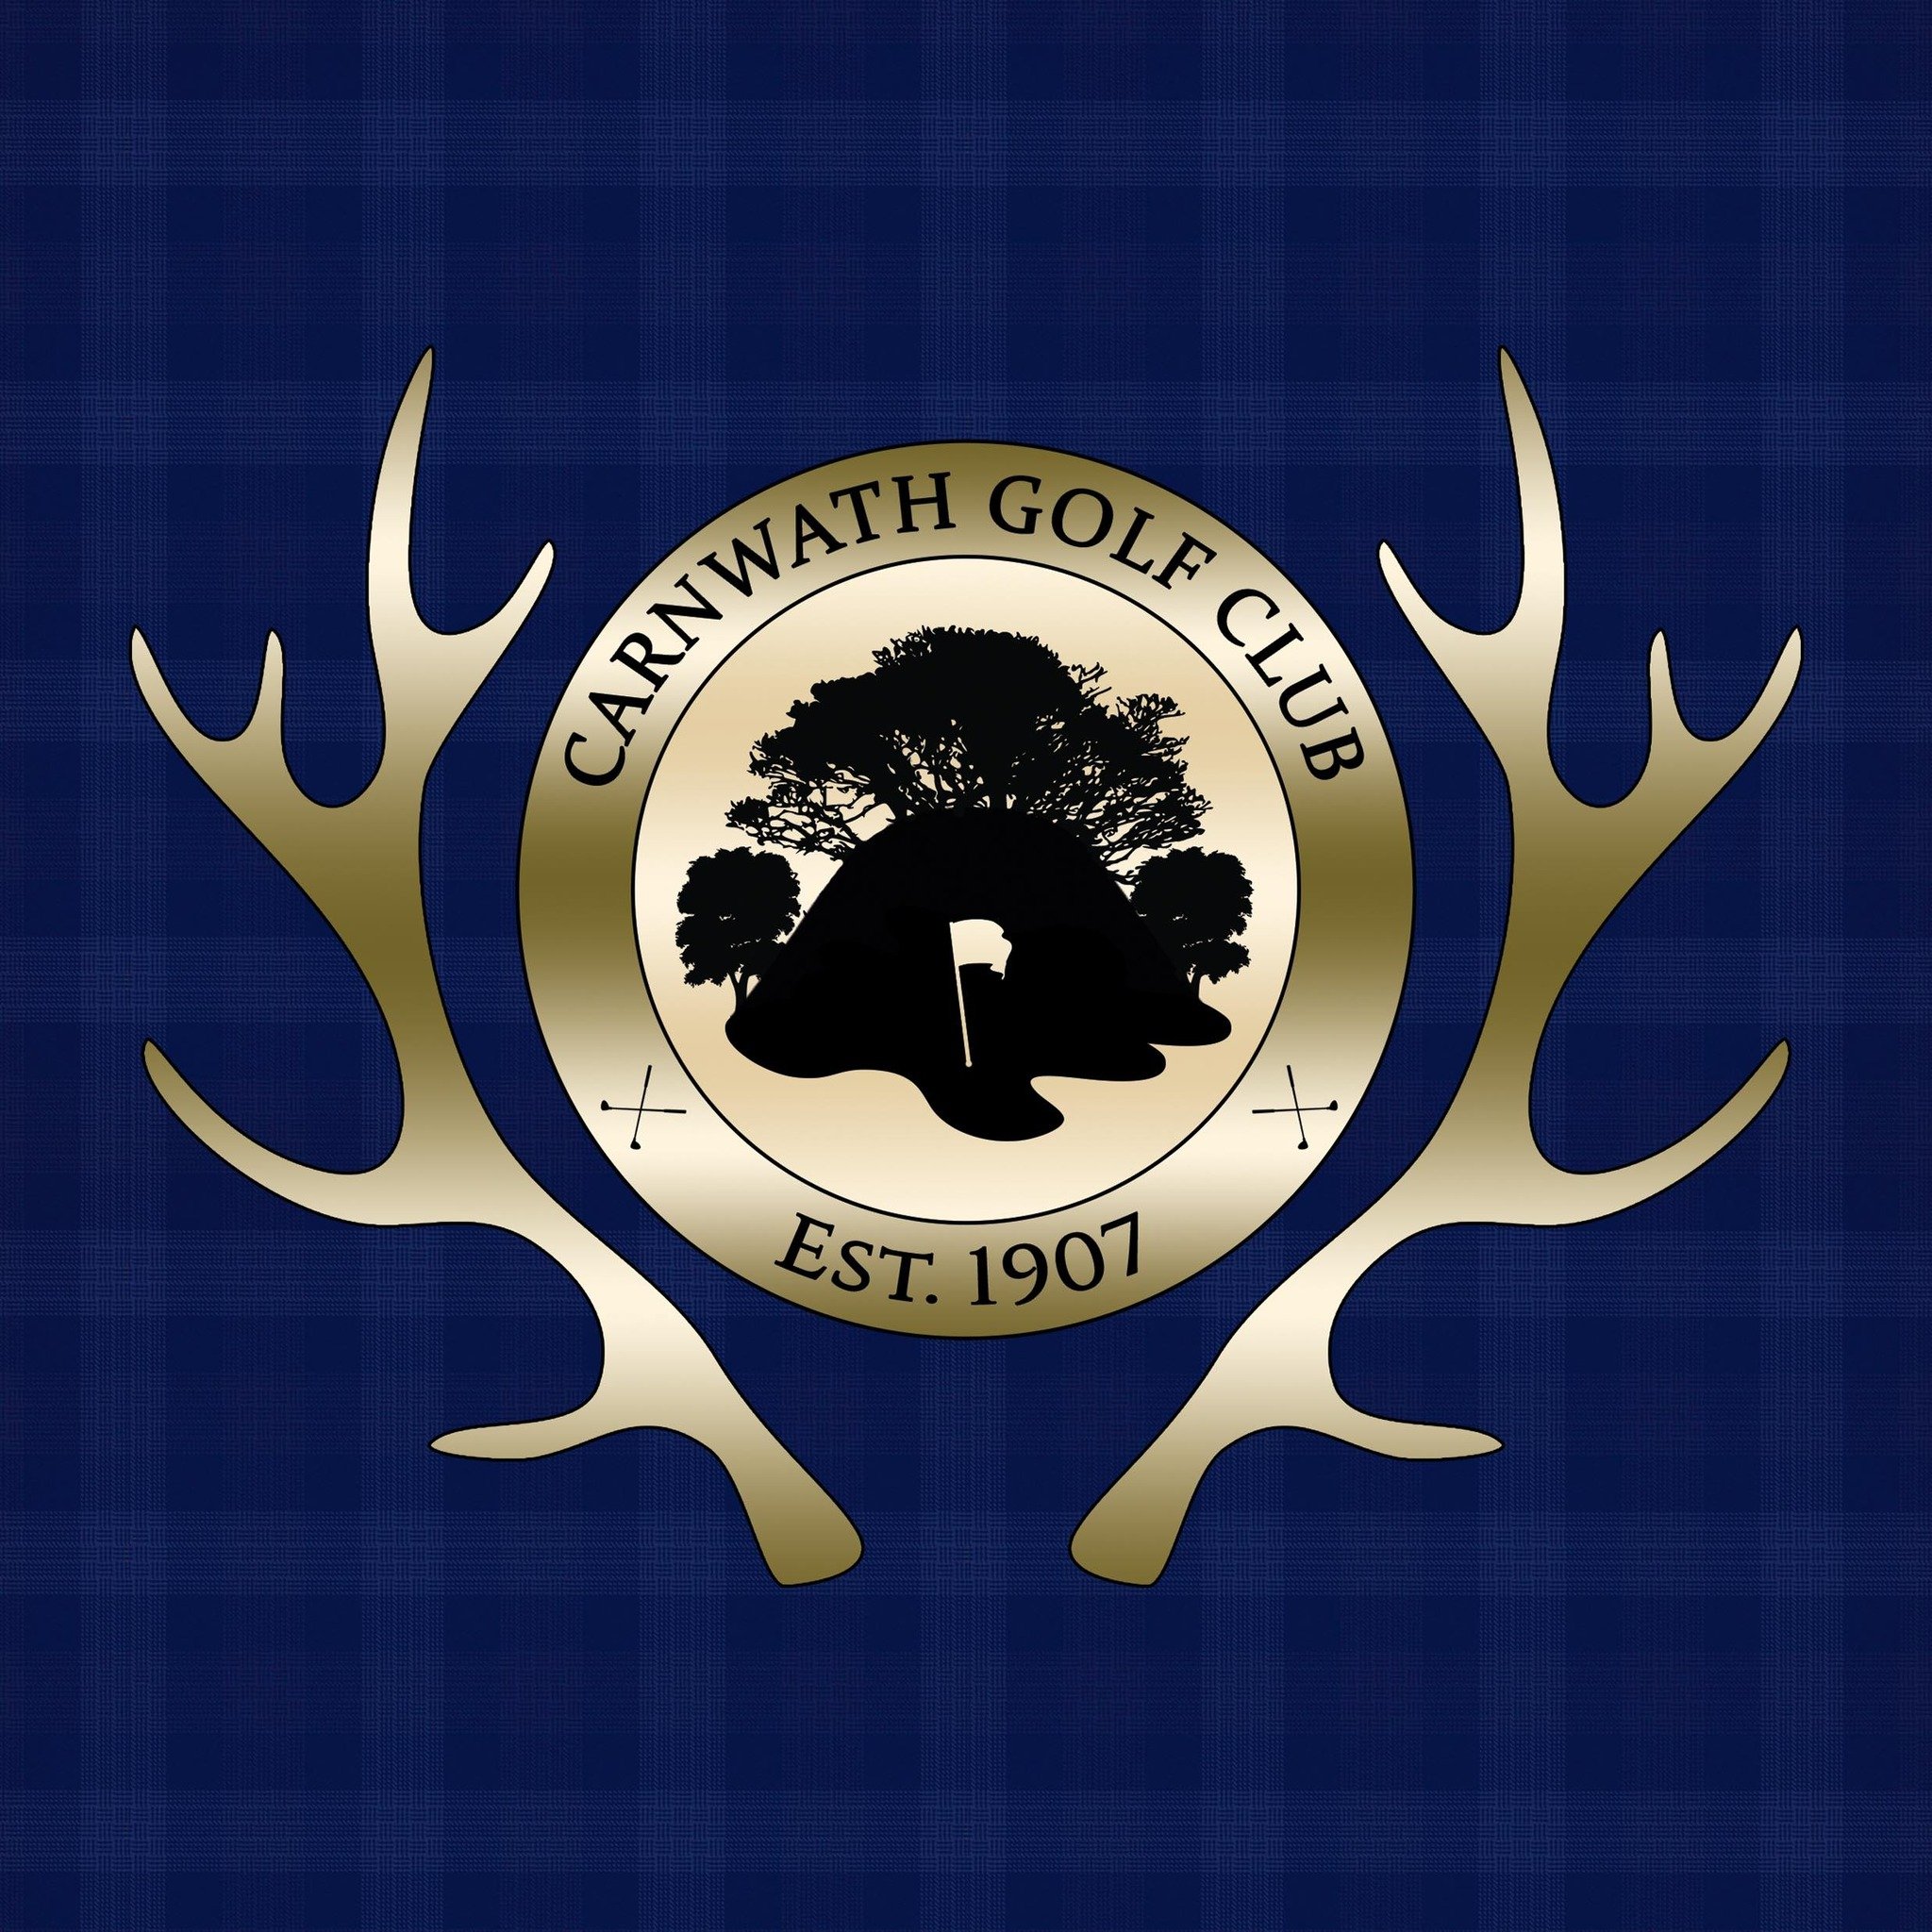 Carnwath Golf Club logo